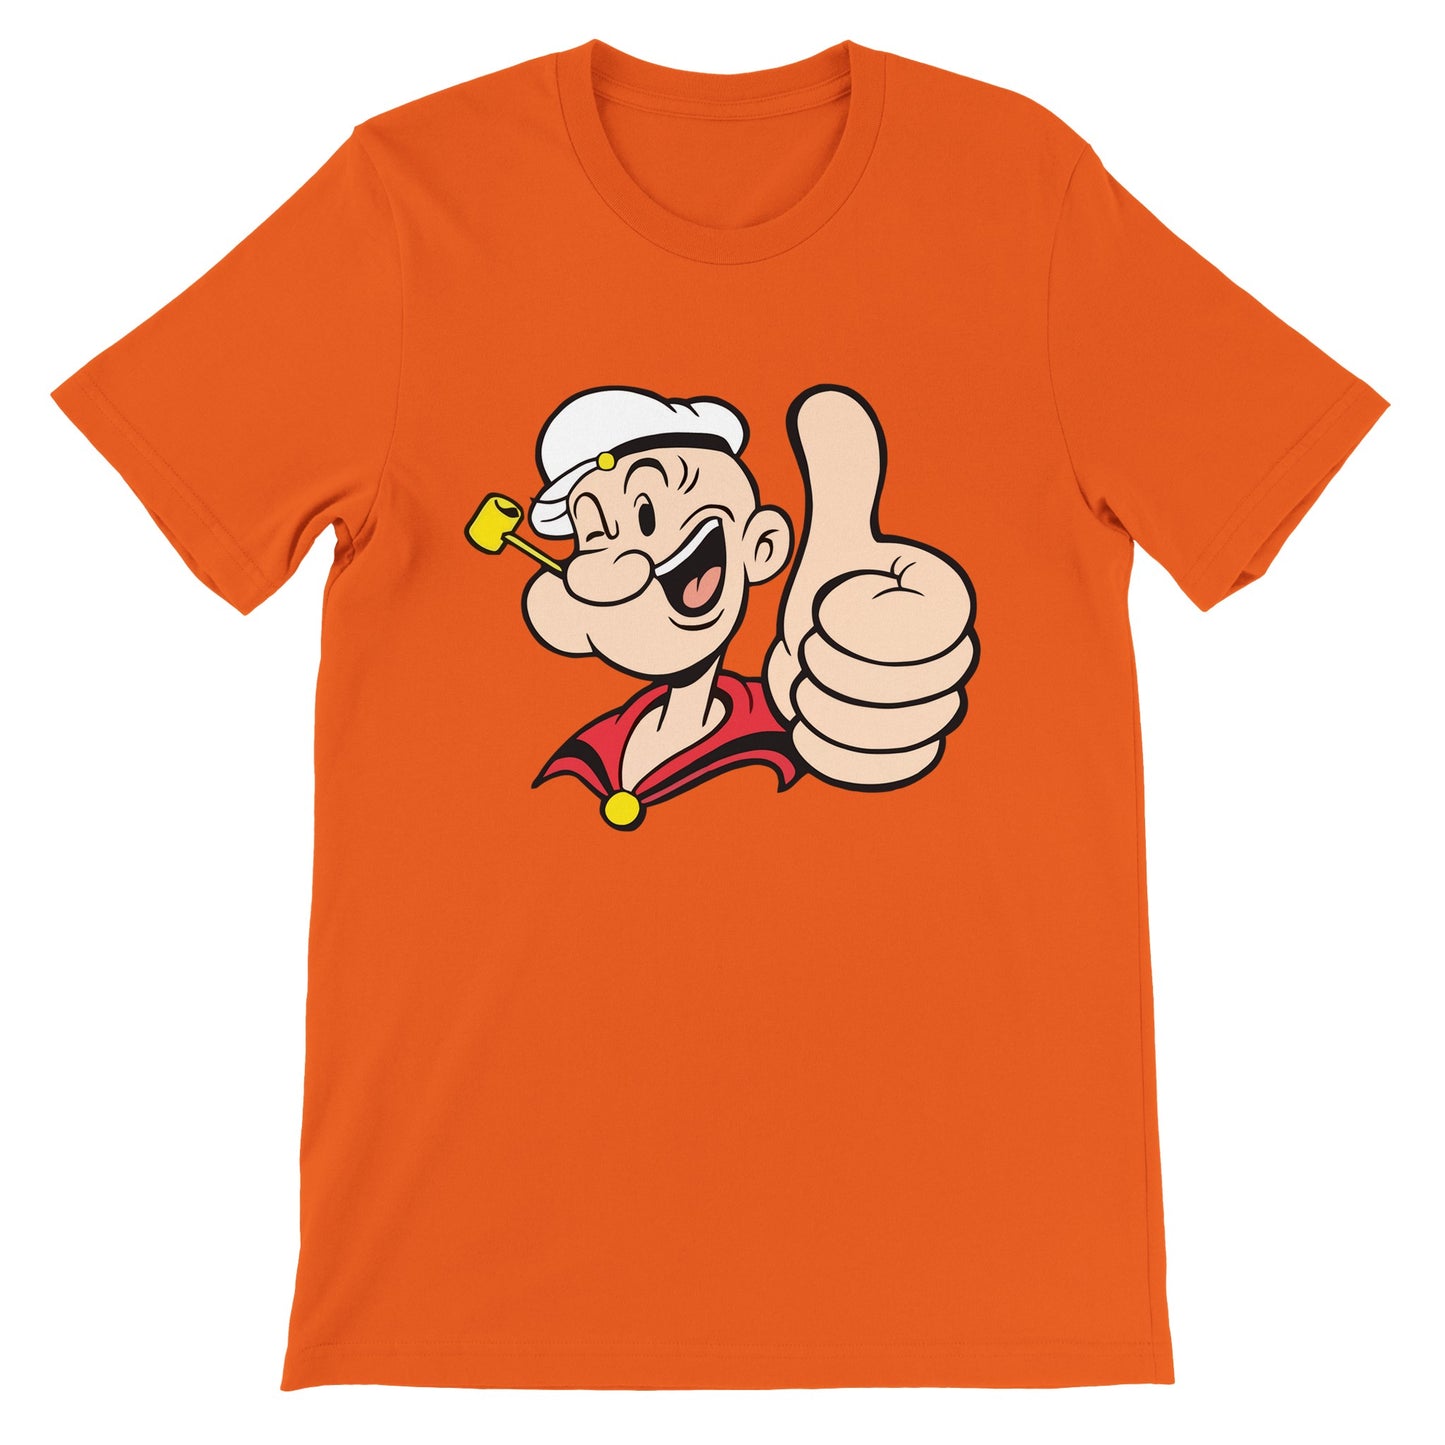 Popeye T-shirt - Popeye Thumbs Up Artwork - Premium Unisex T-shirt